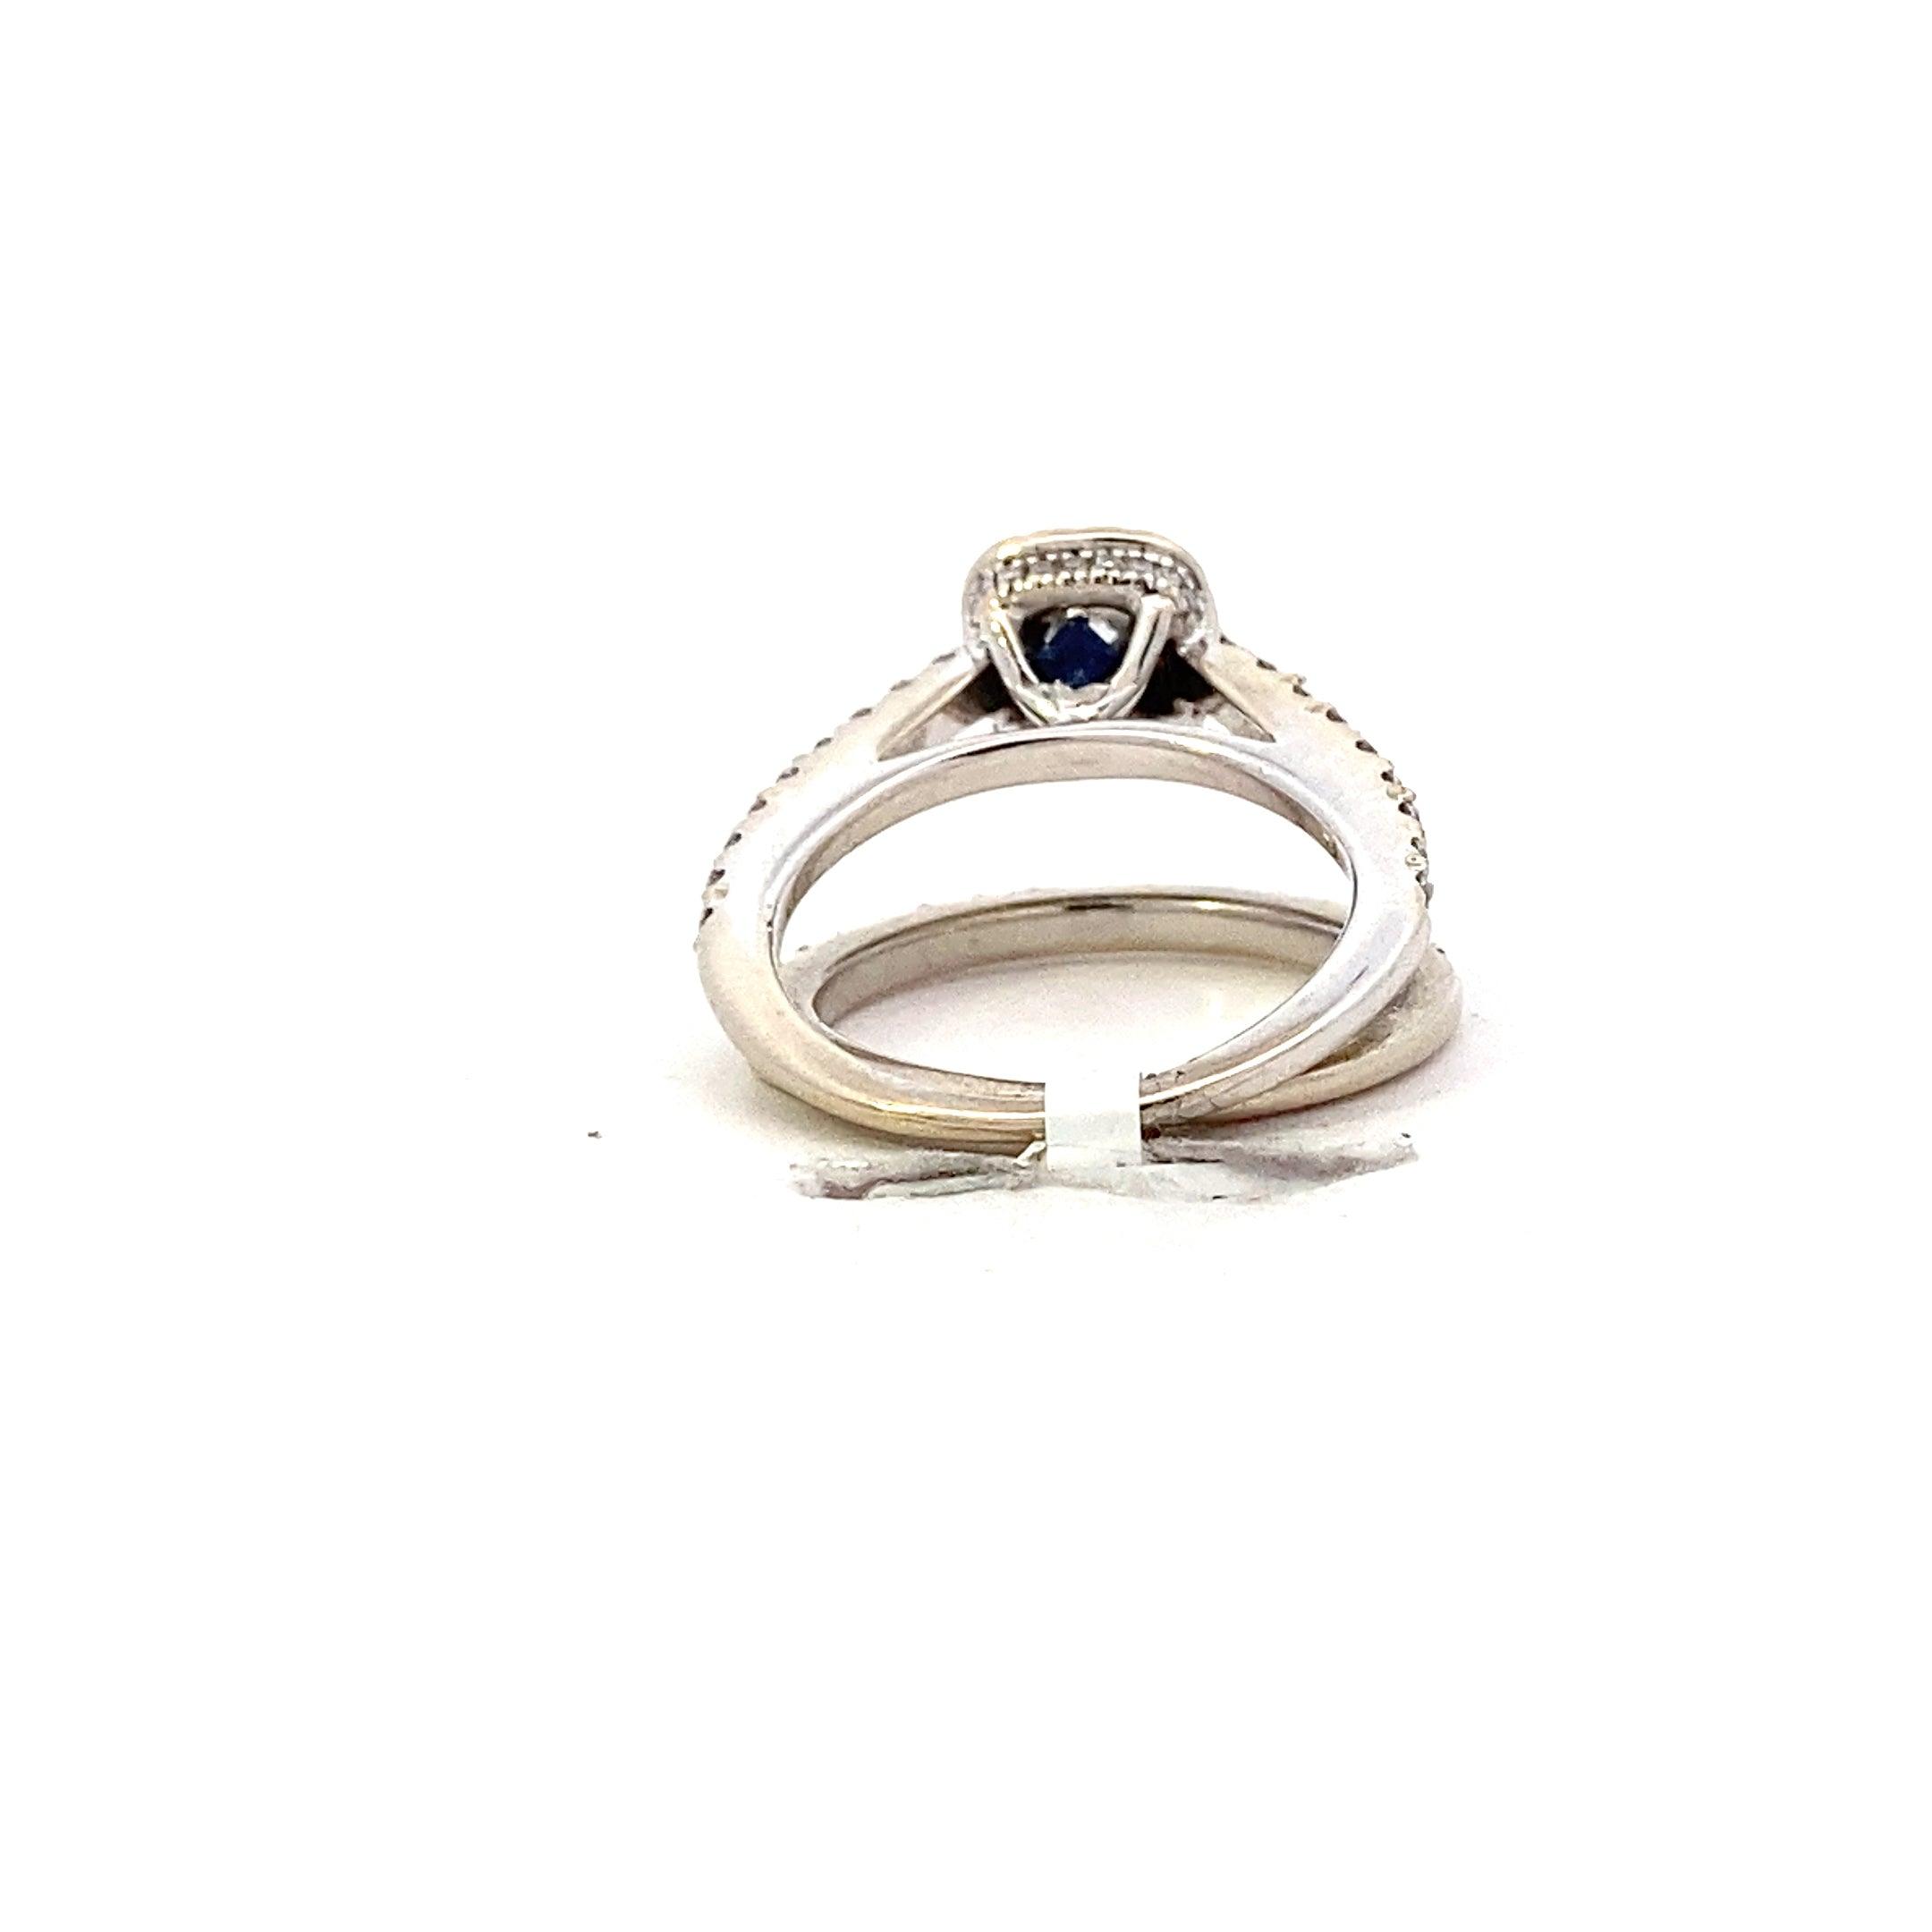 10K White Gold Diamond Wedding & Engagement Ring Set - 0.91ct - ipawnishop.com